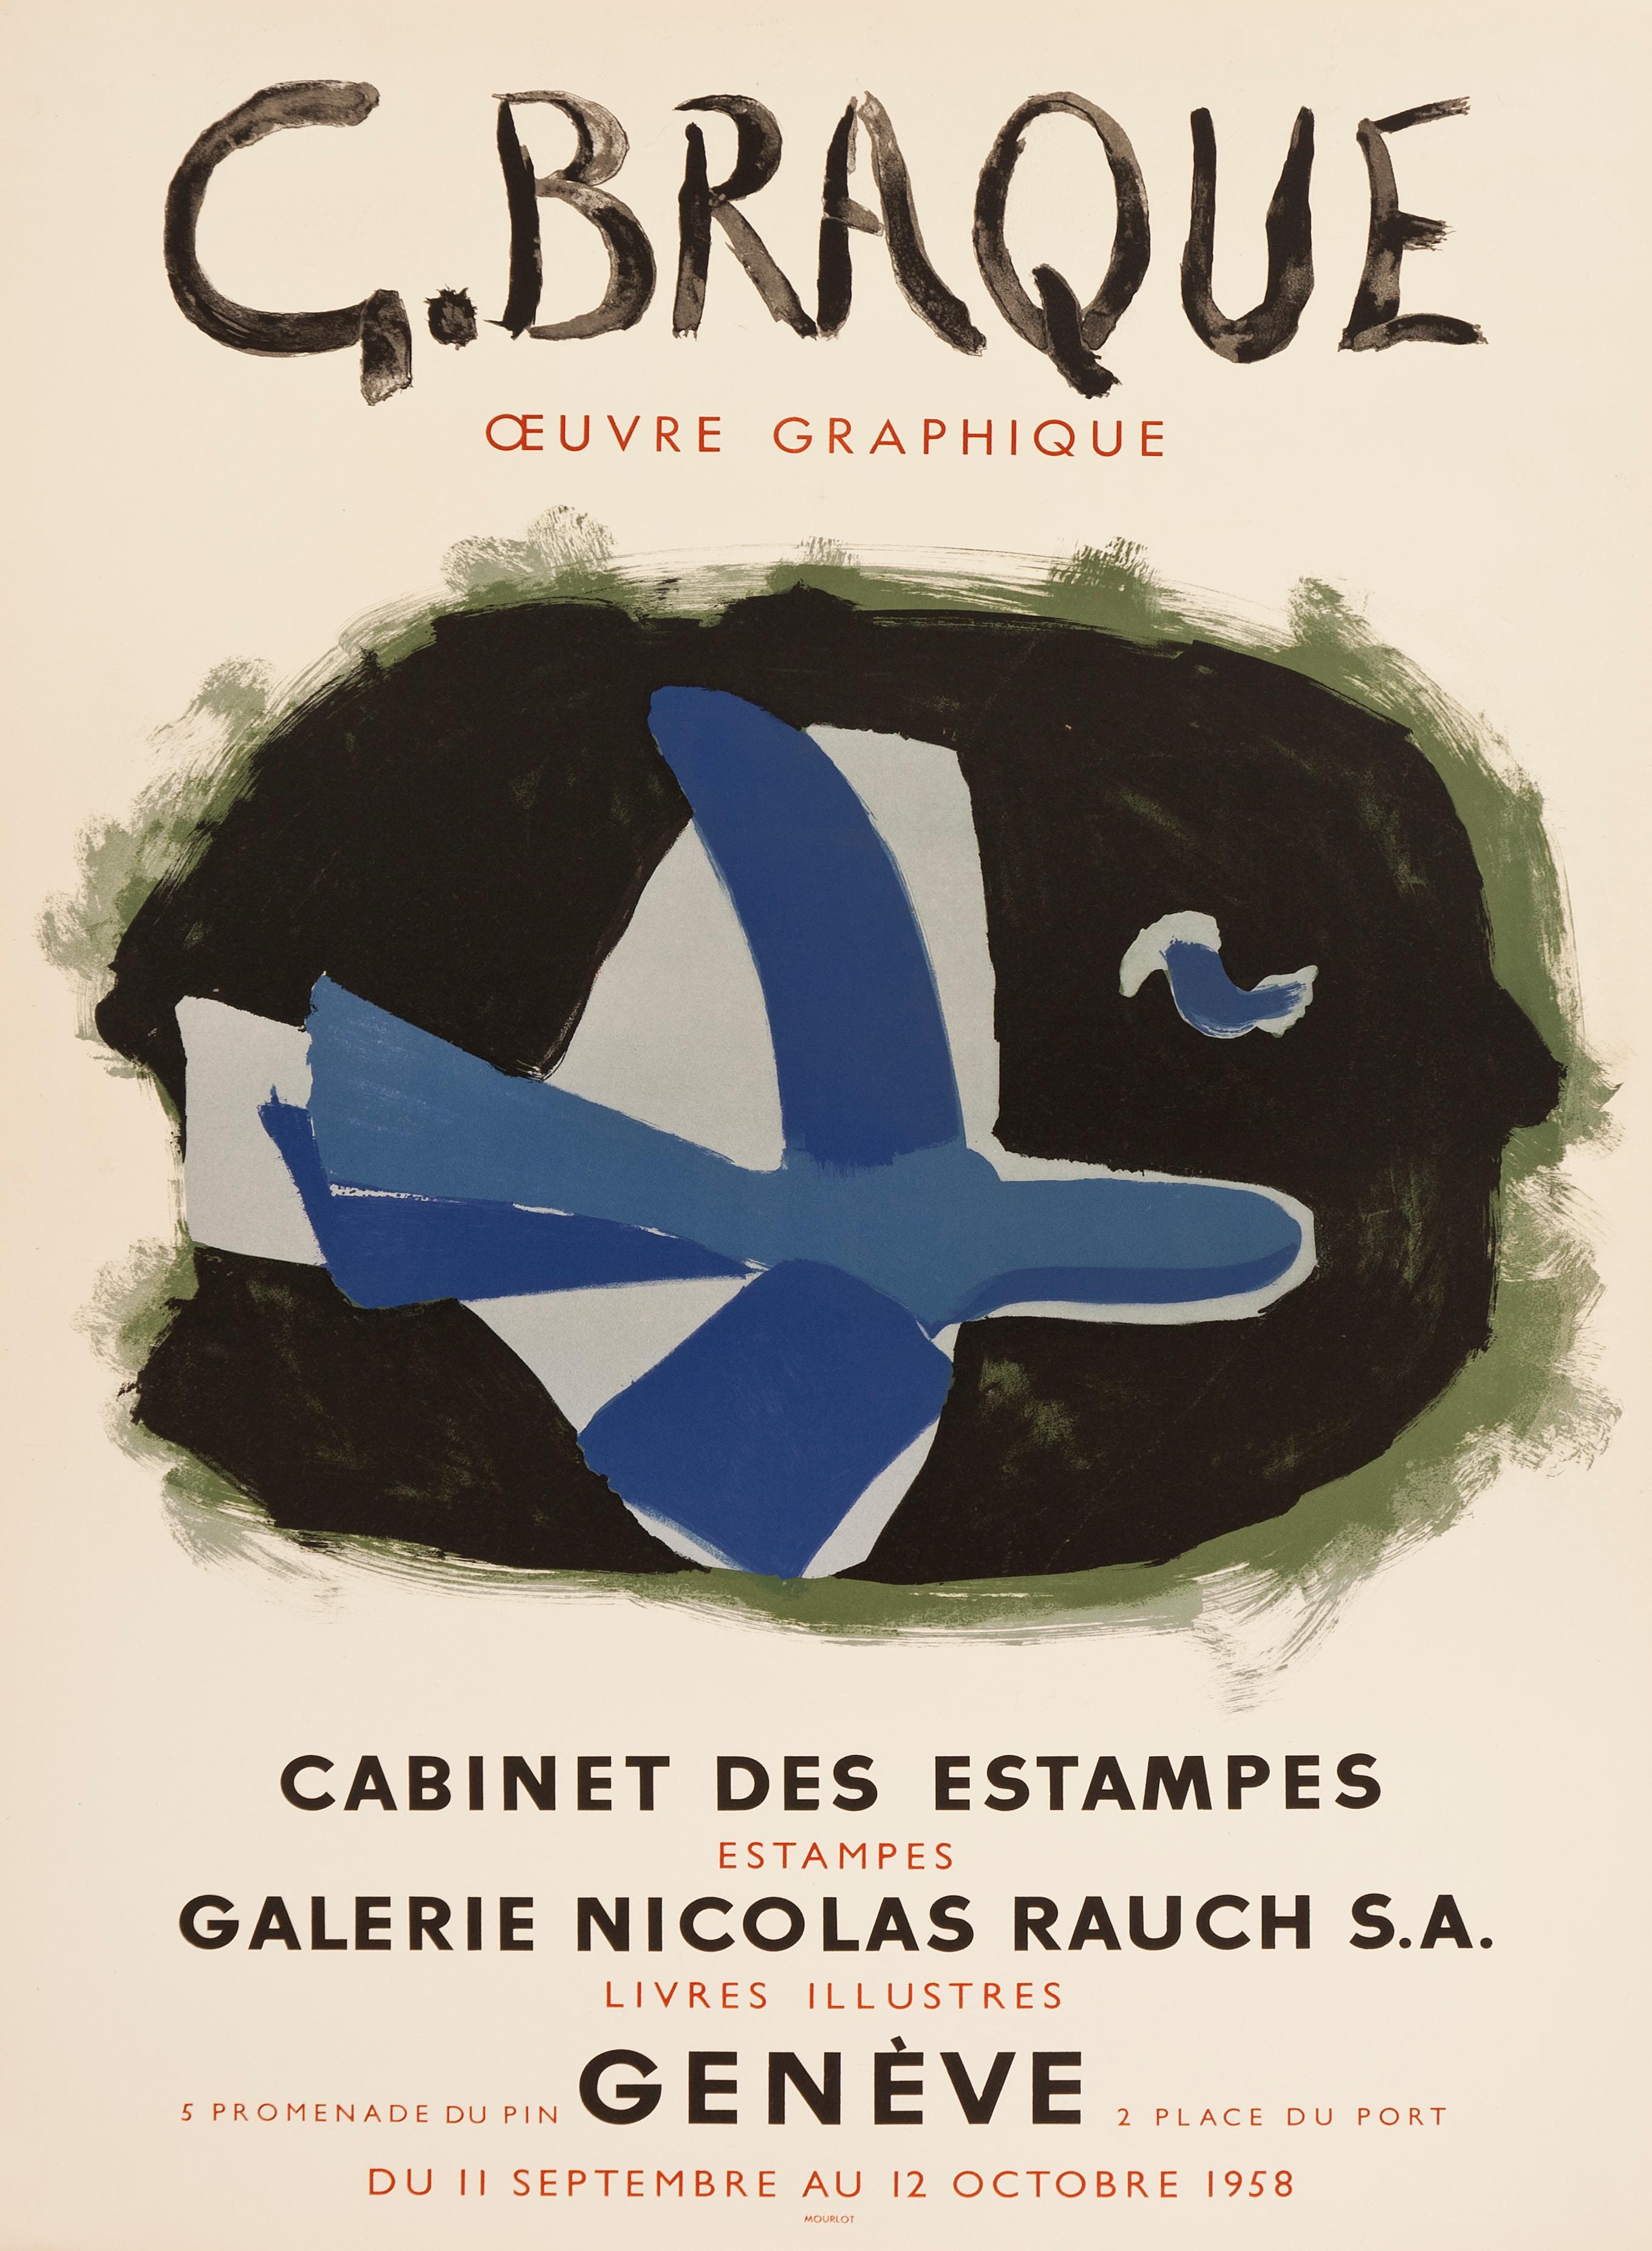 L'Oiseau des forêts - Galerie Nicolas Rauch after Georges Braque, 1958